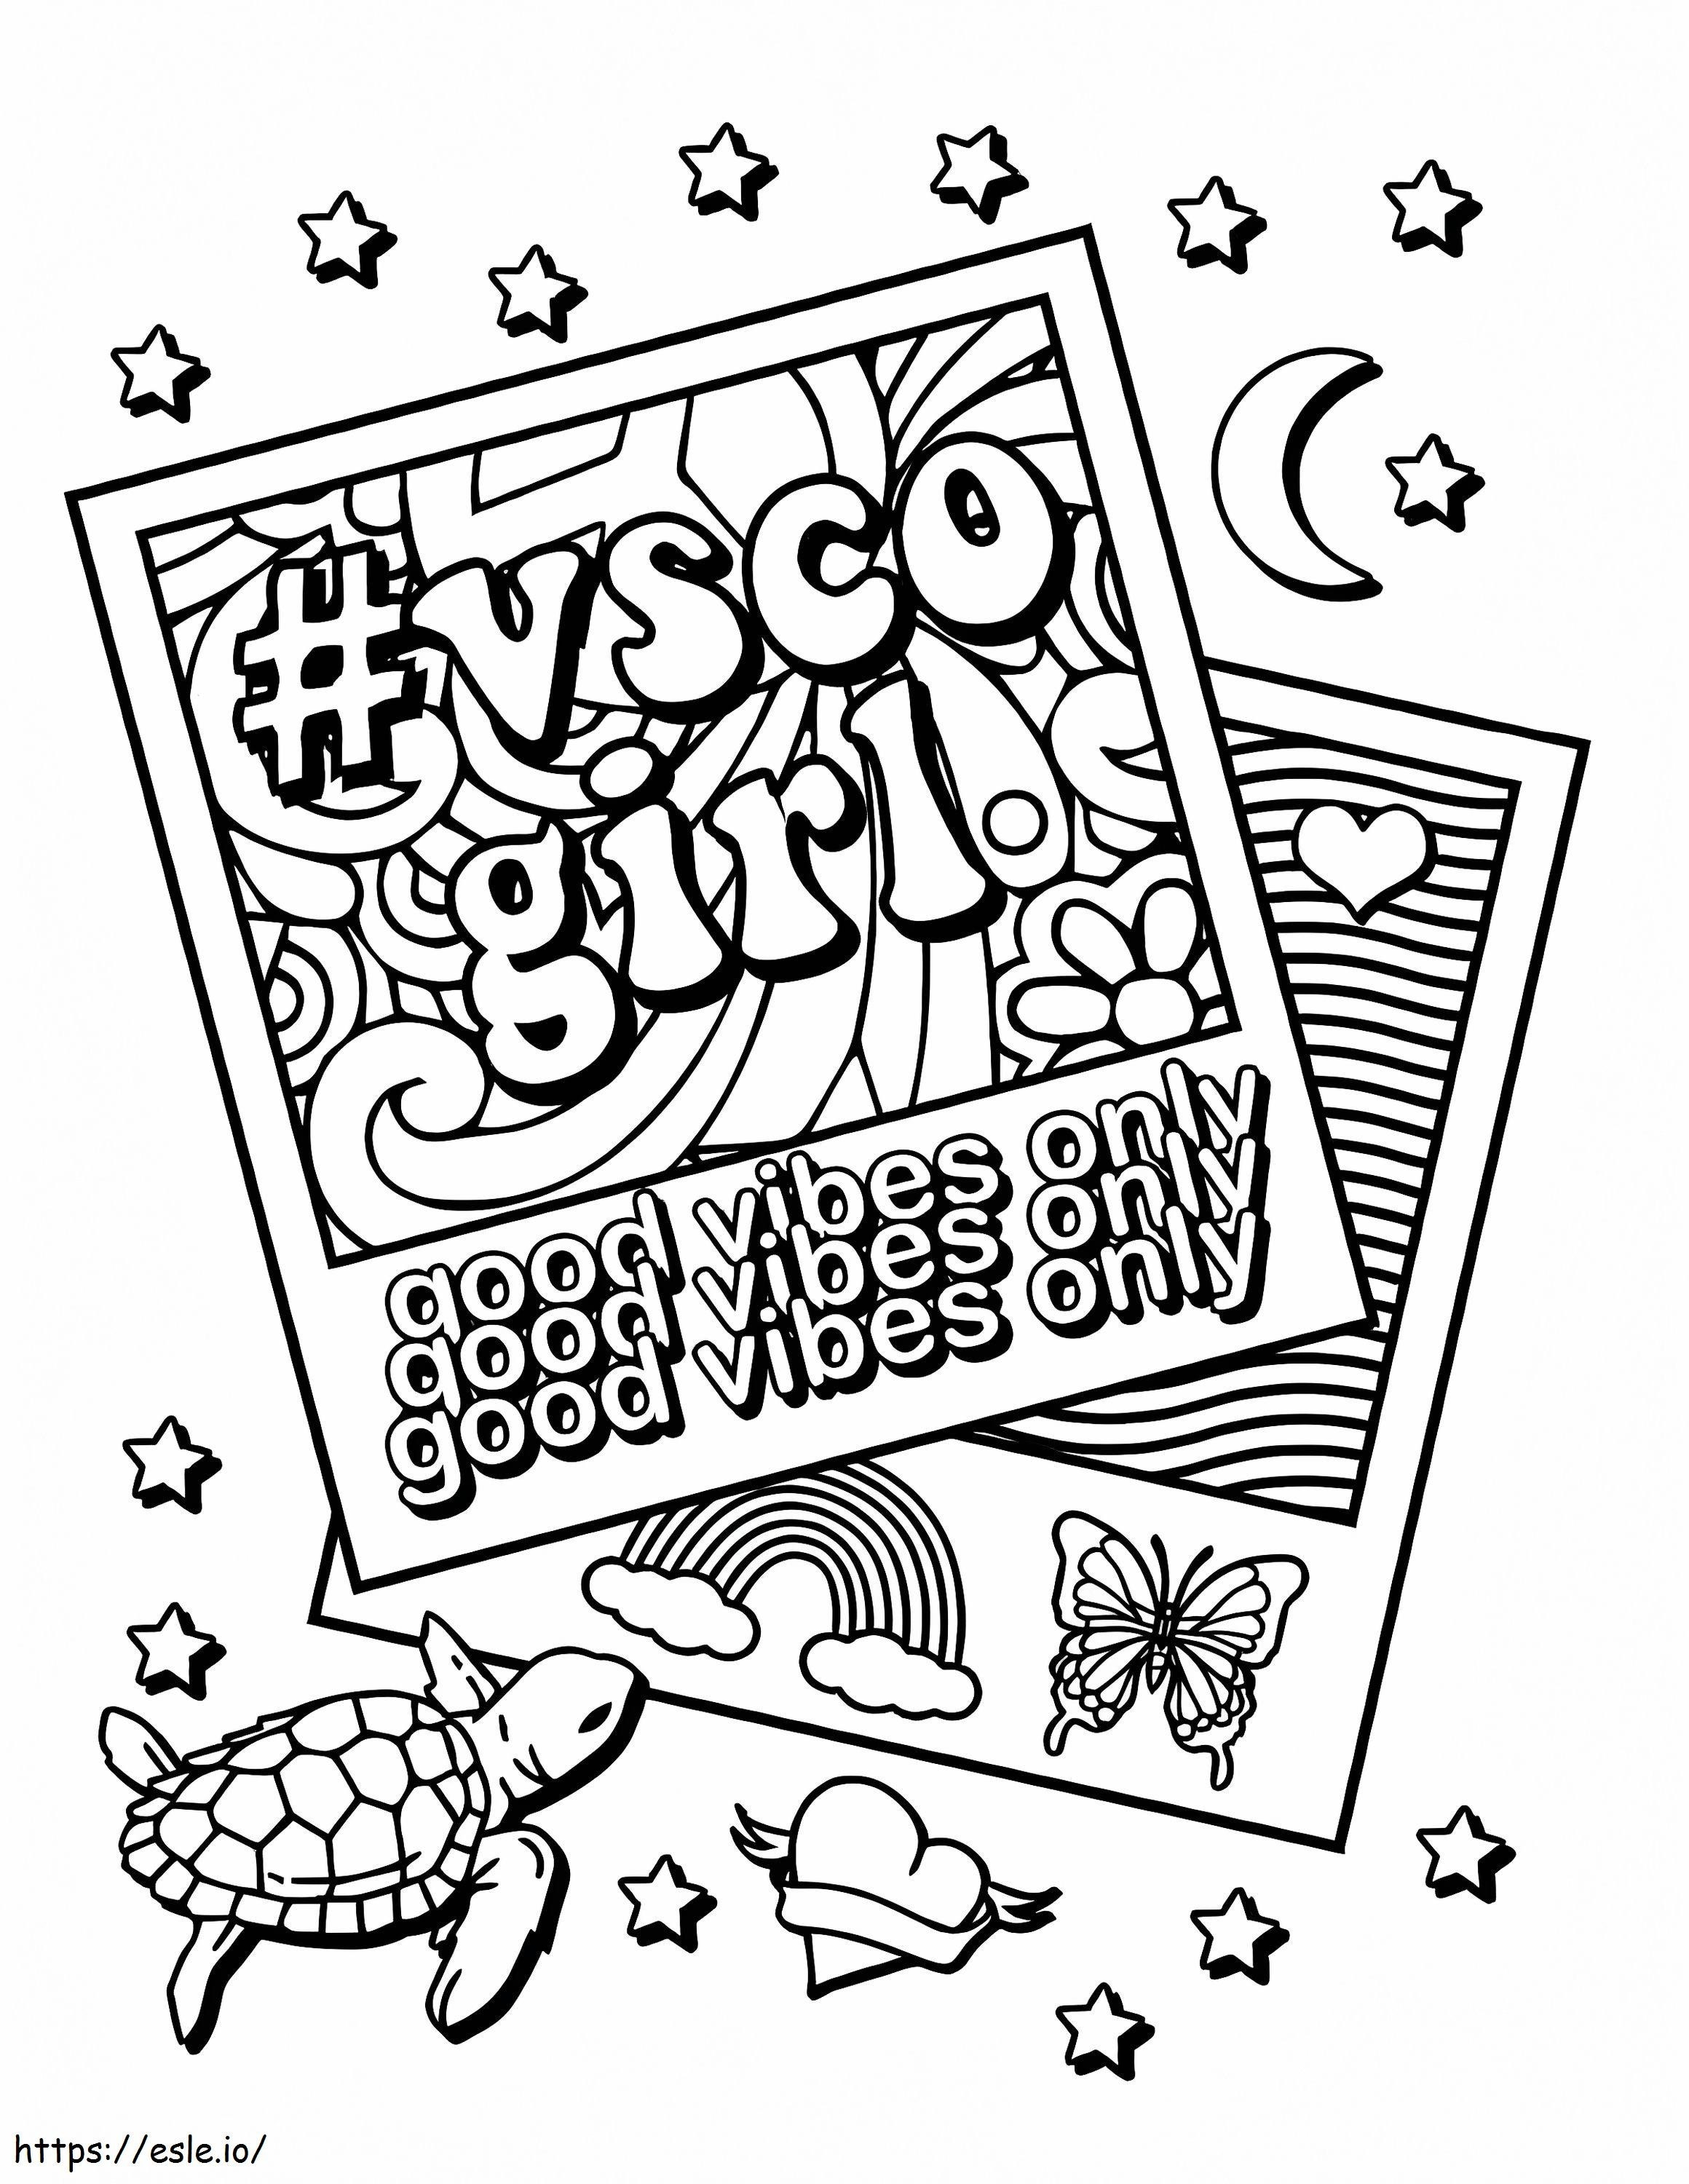 VSCO Girl Good Vibes Only kifestő